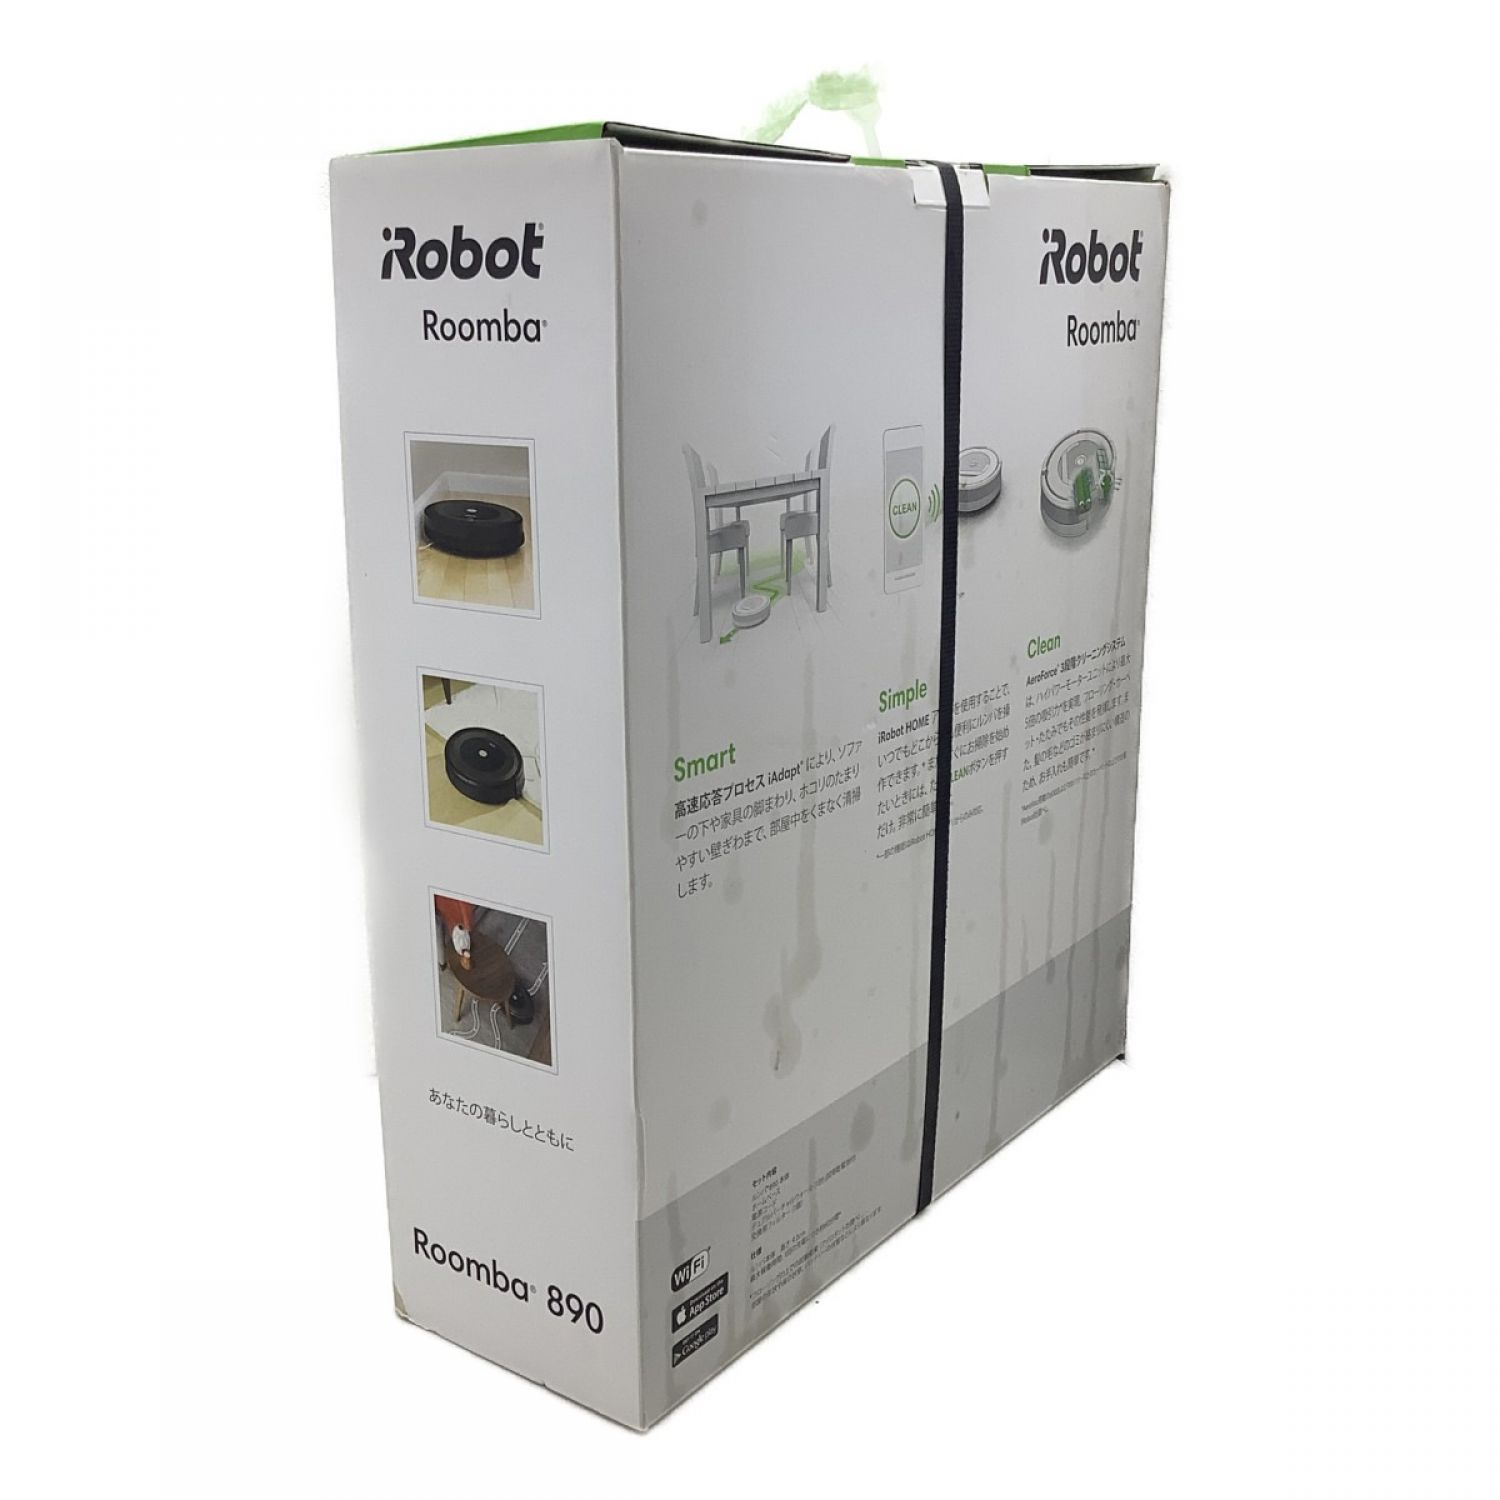 中古】 ルンバ 開封済未使用品 iRobot Roomba ロボット掃除機 890 A